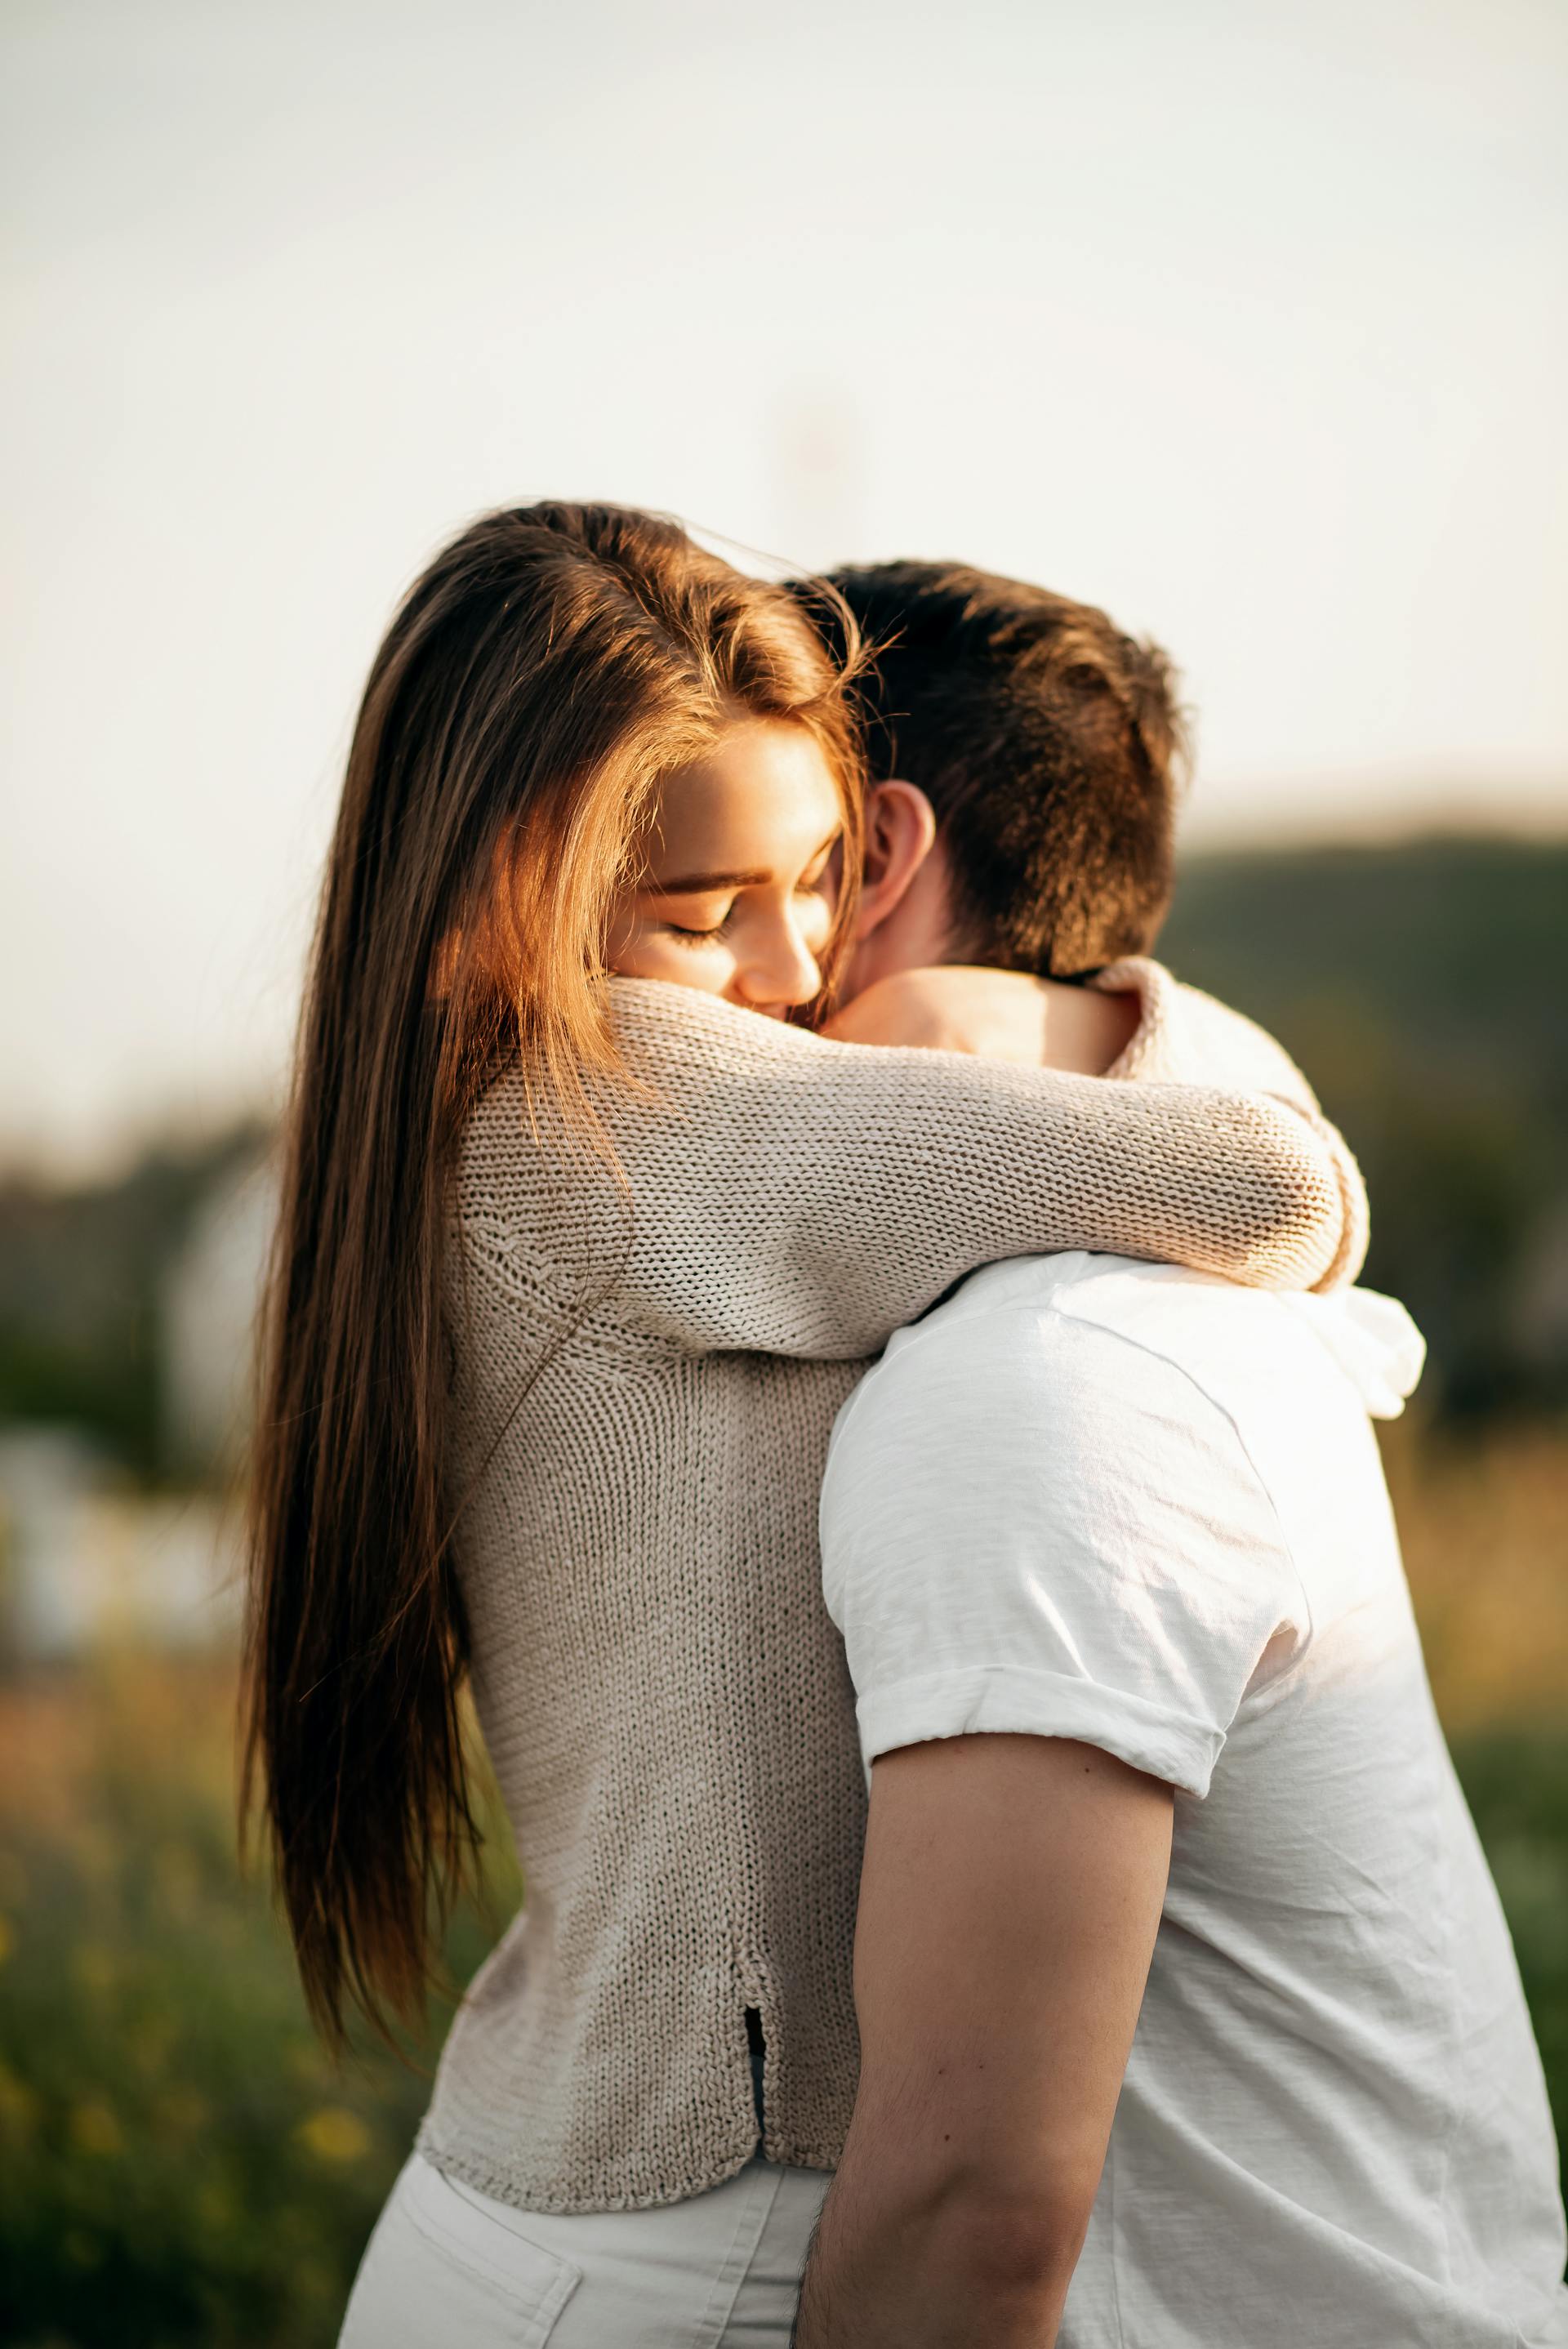 Una pareja de enamorados se abraza al aire libre | Fuente: Pexels